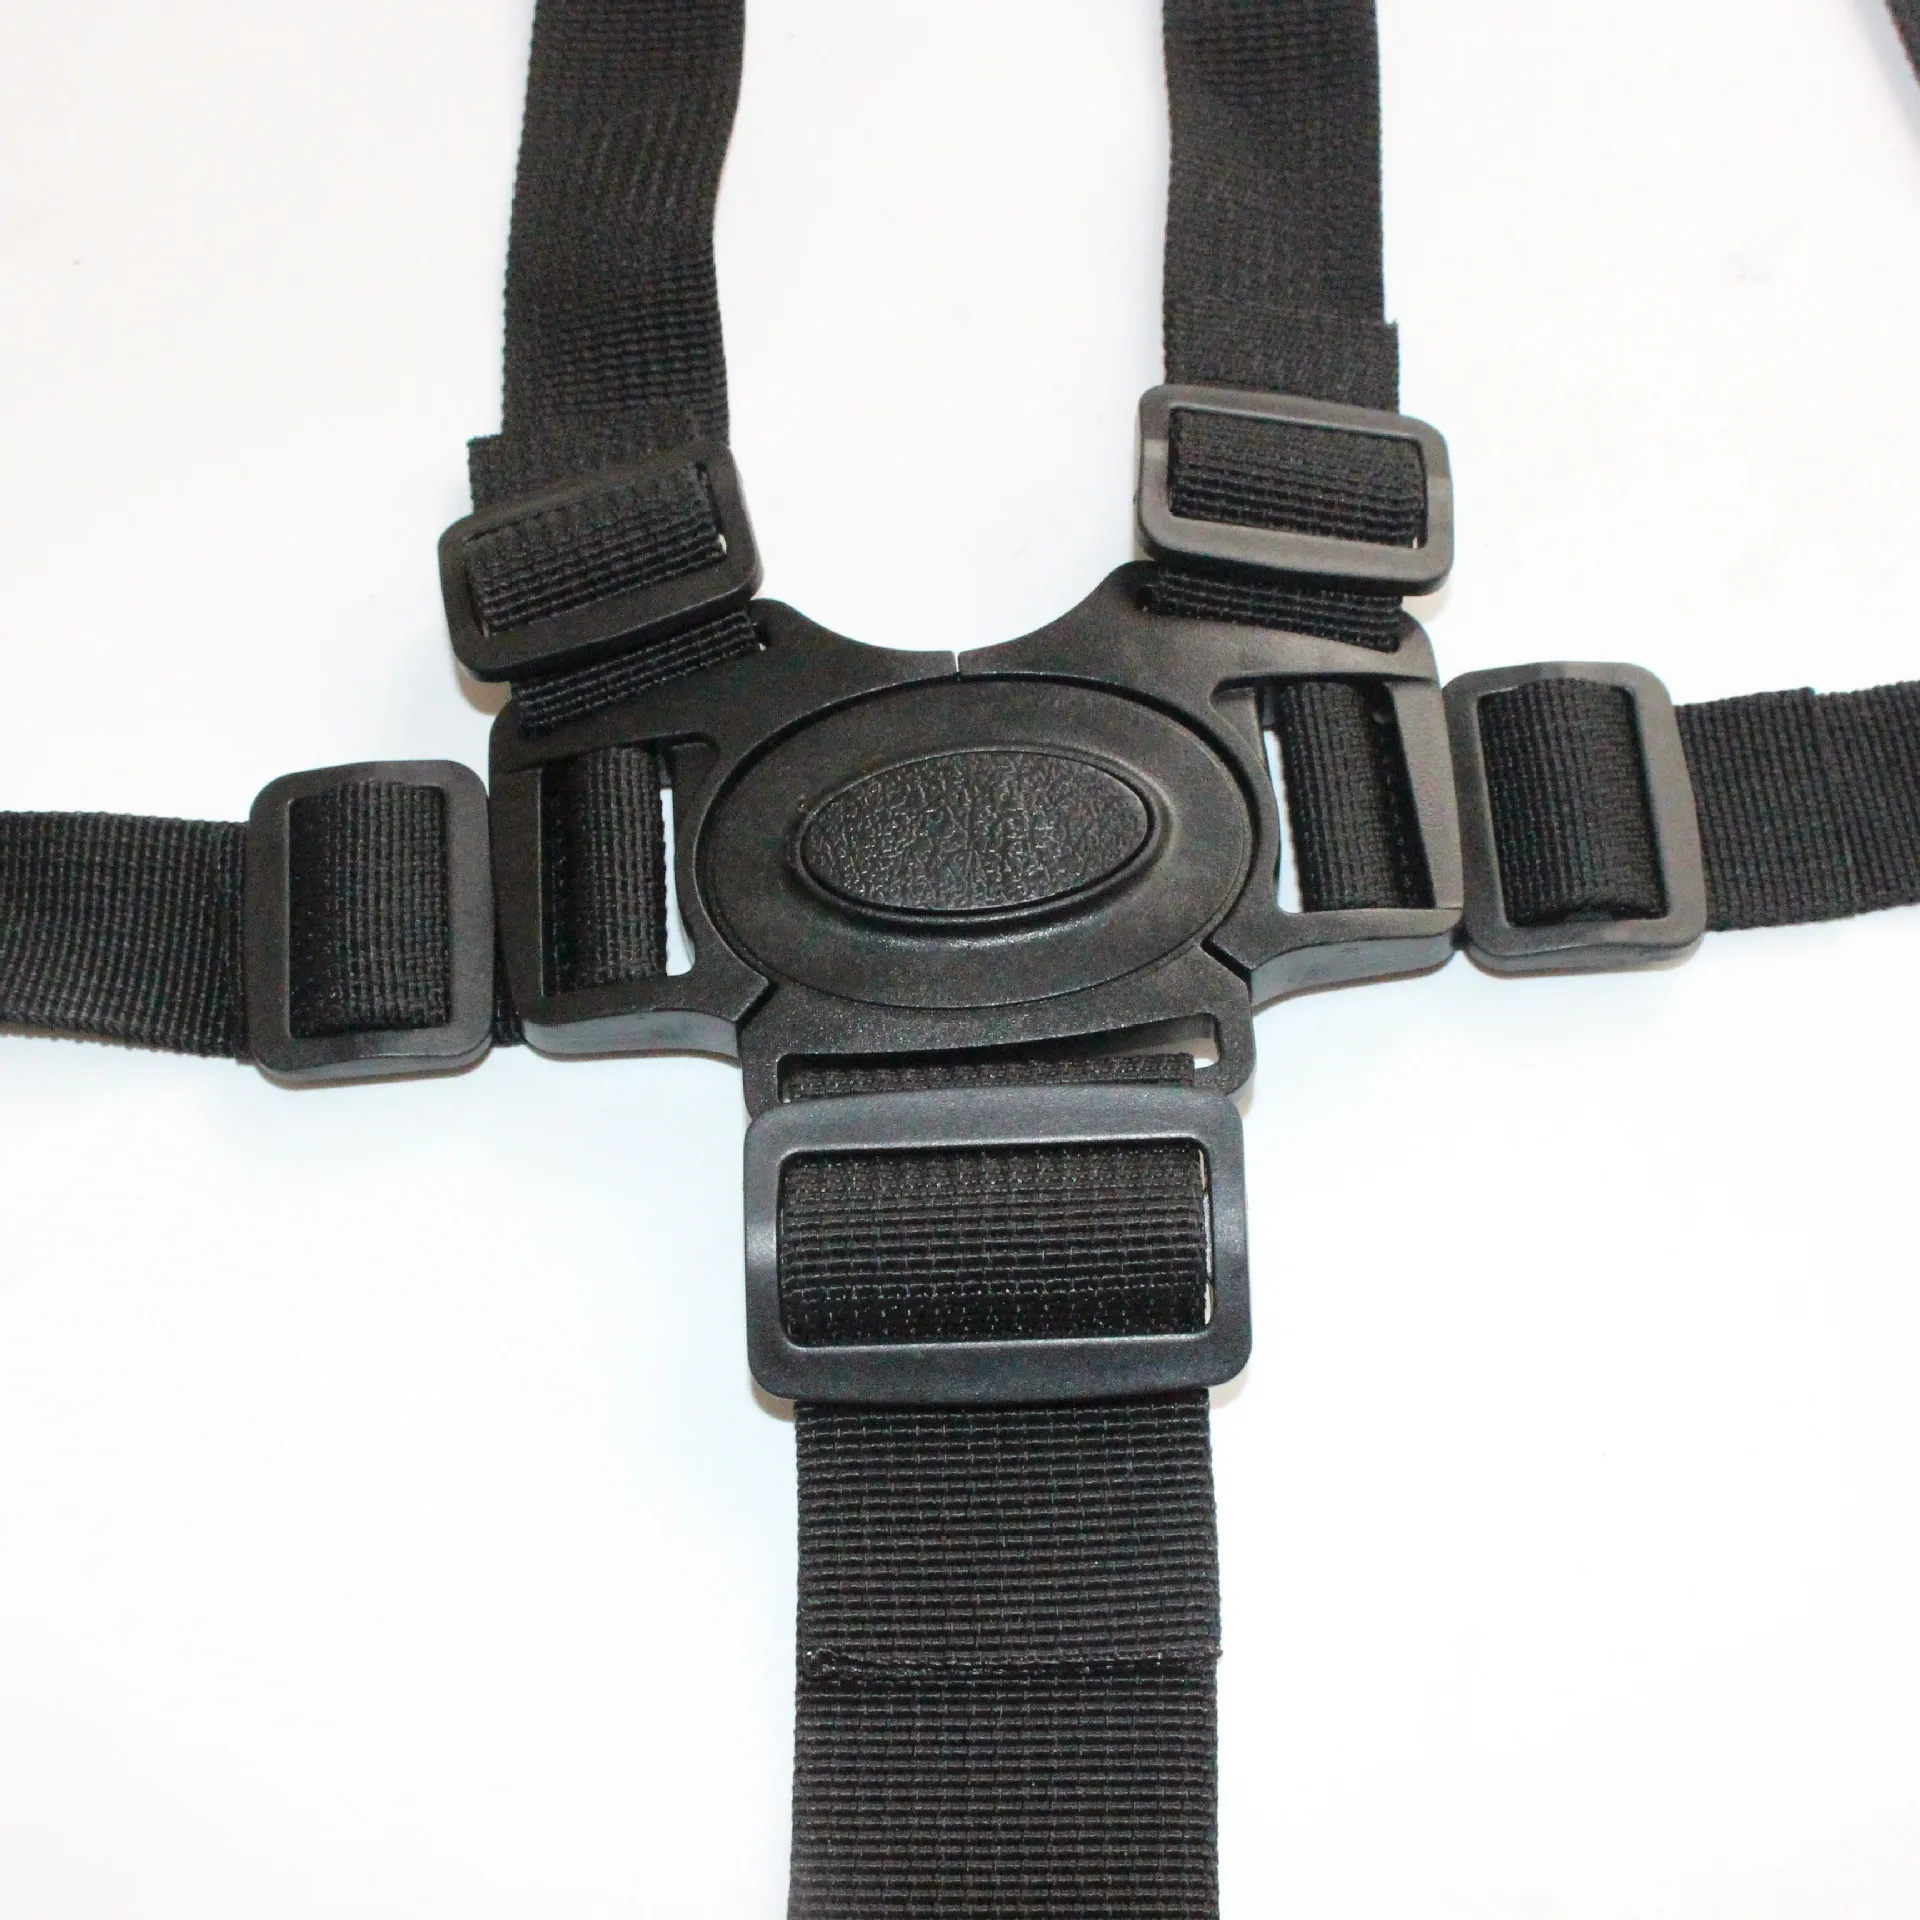 Cinturón de seguridad de nailon para cochecito de bebé, arnés de 5 puntos con gancho giratorio de 360 grados, color negro